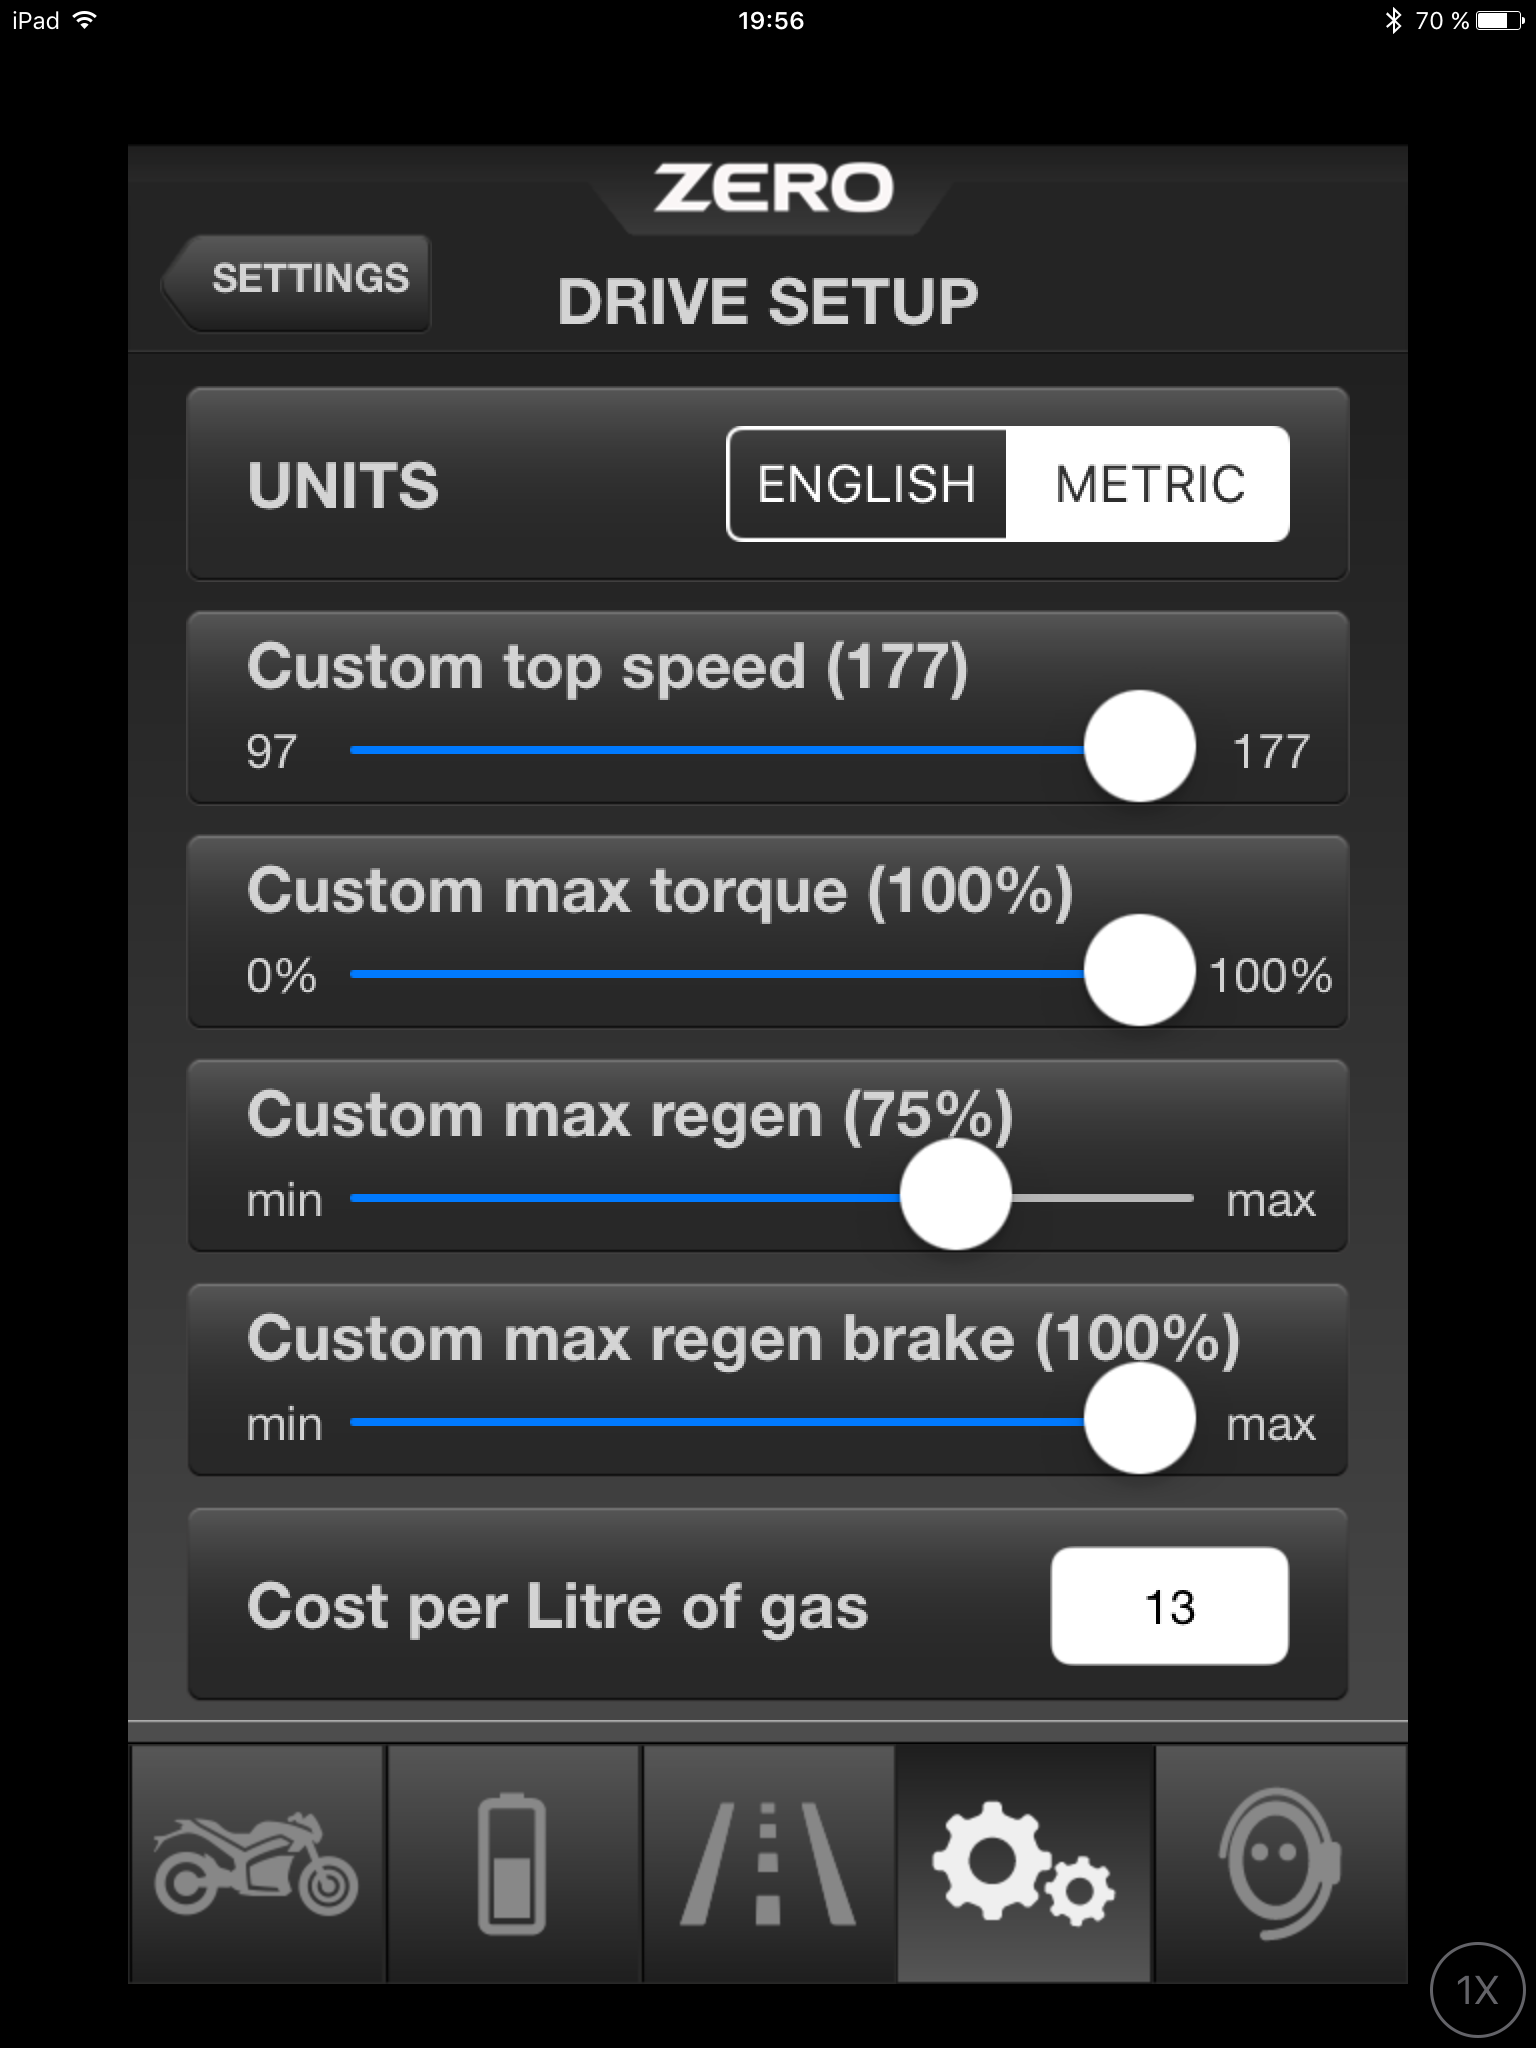 Via appen Zero Motorcycles kan du koppla ihop dig med en Zero-motorcykel via Bluetooth och själv ställa in en mängd olika parametrar för körläget Custom. Bild: Skärmdump från appen i en iPad.